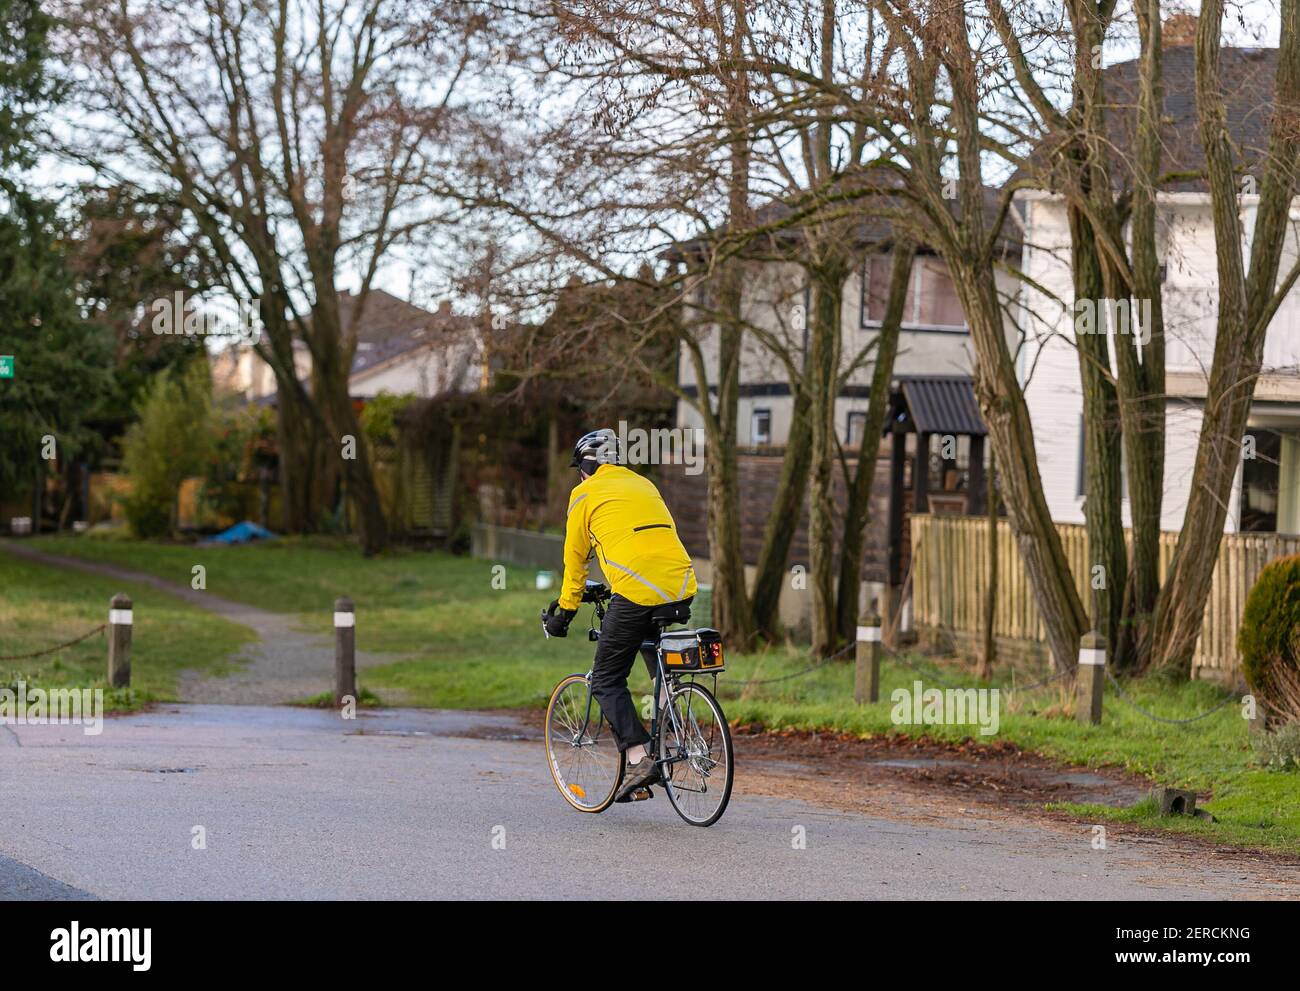 Ein Mann in einer gelben Jacke und Helm auf dem Land auf einem Fahrrad fahren. Straßenansicht, Reisefoto, selektiver Fokus, Konzeptfoto Sportaktivität. Stockfoto